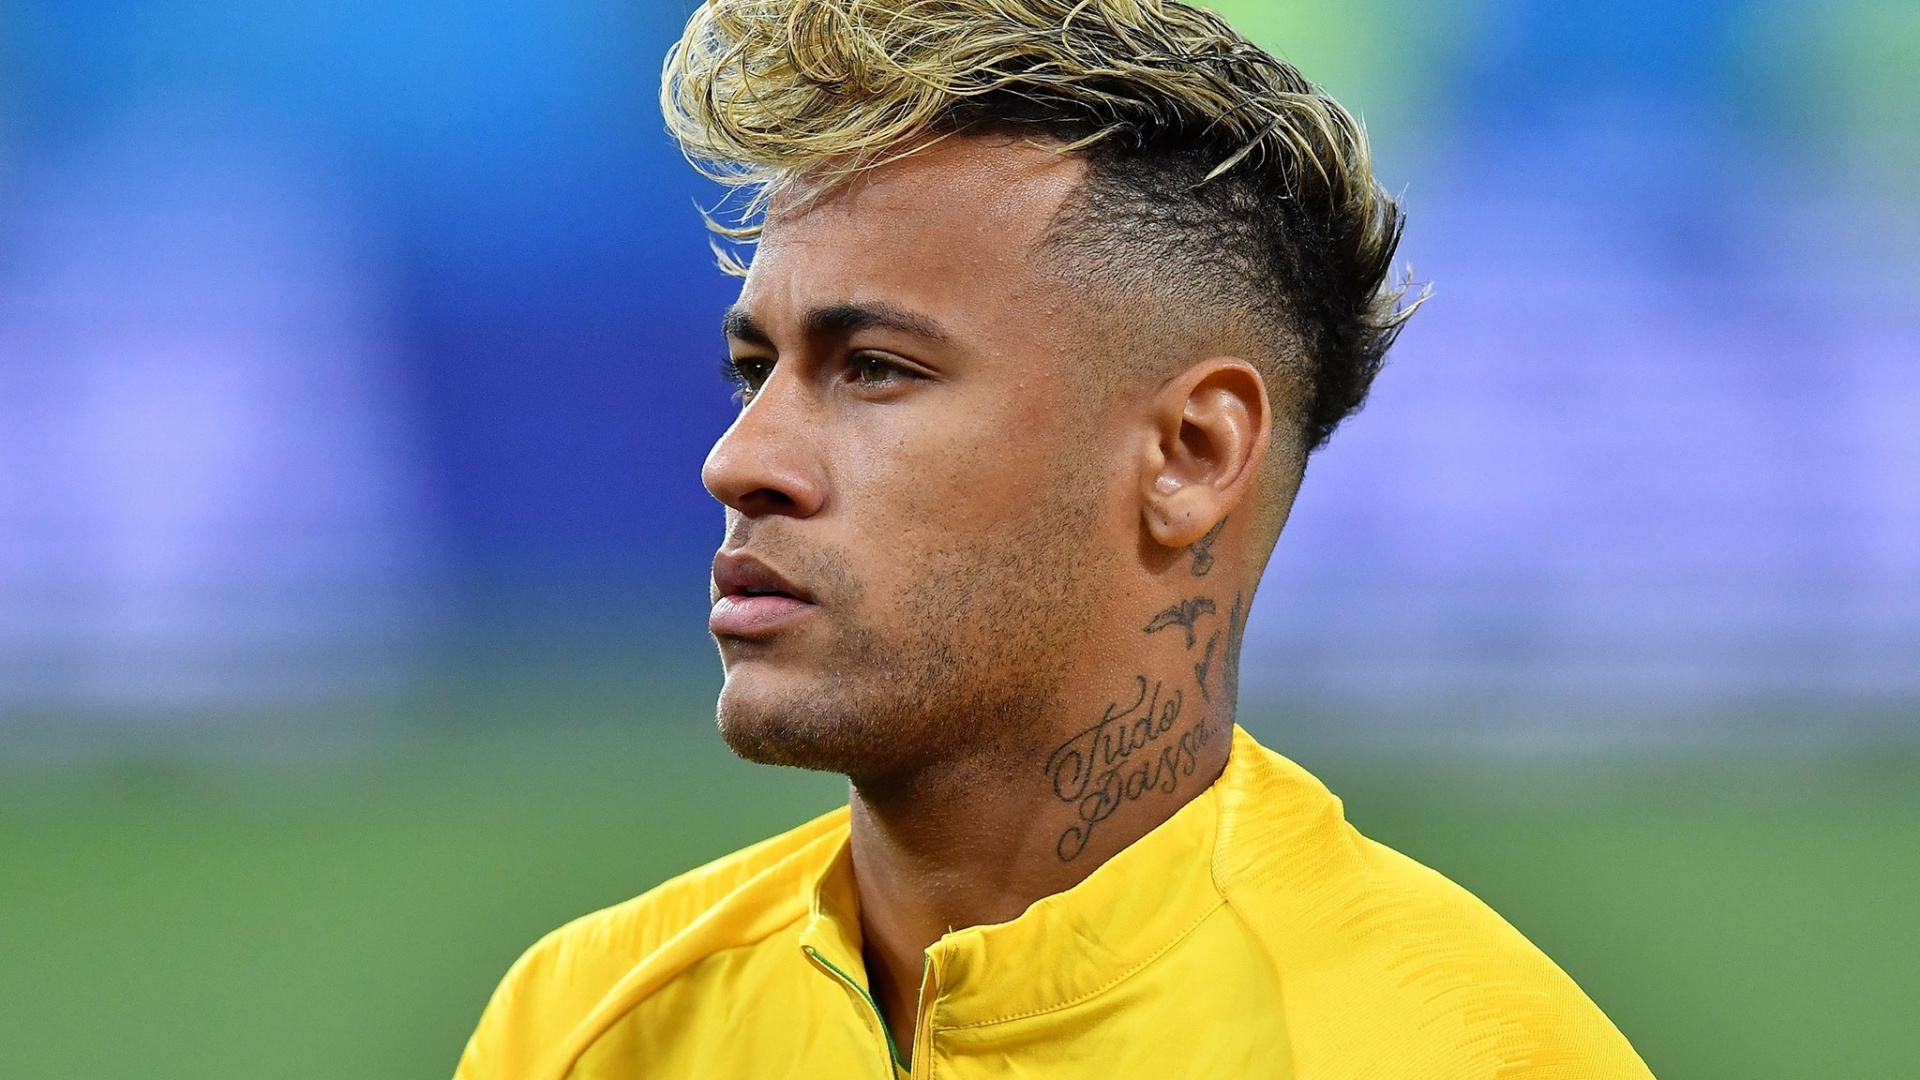 foto neymar jr fondo de pantalla,cabello,peinado,frente,jugador de fútbol,jugador